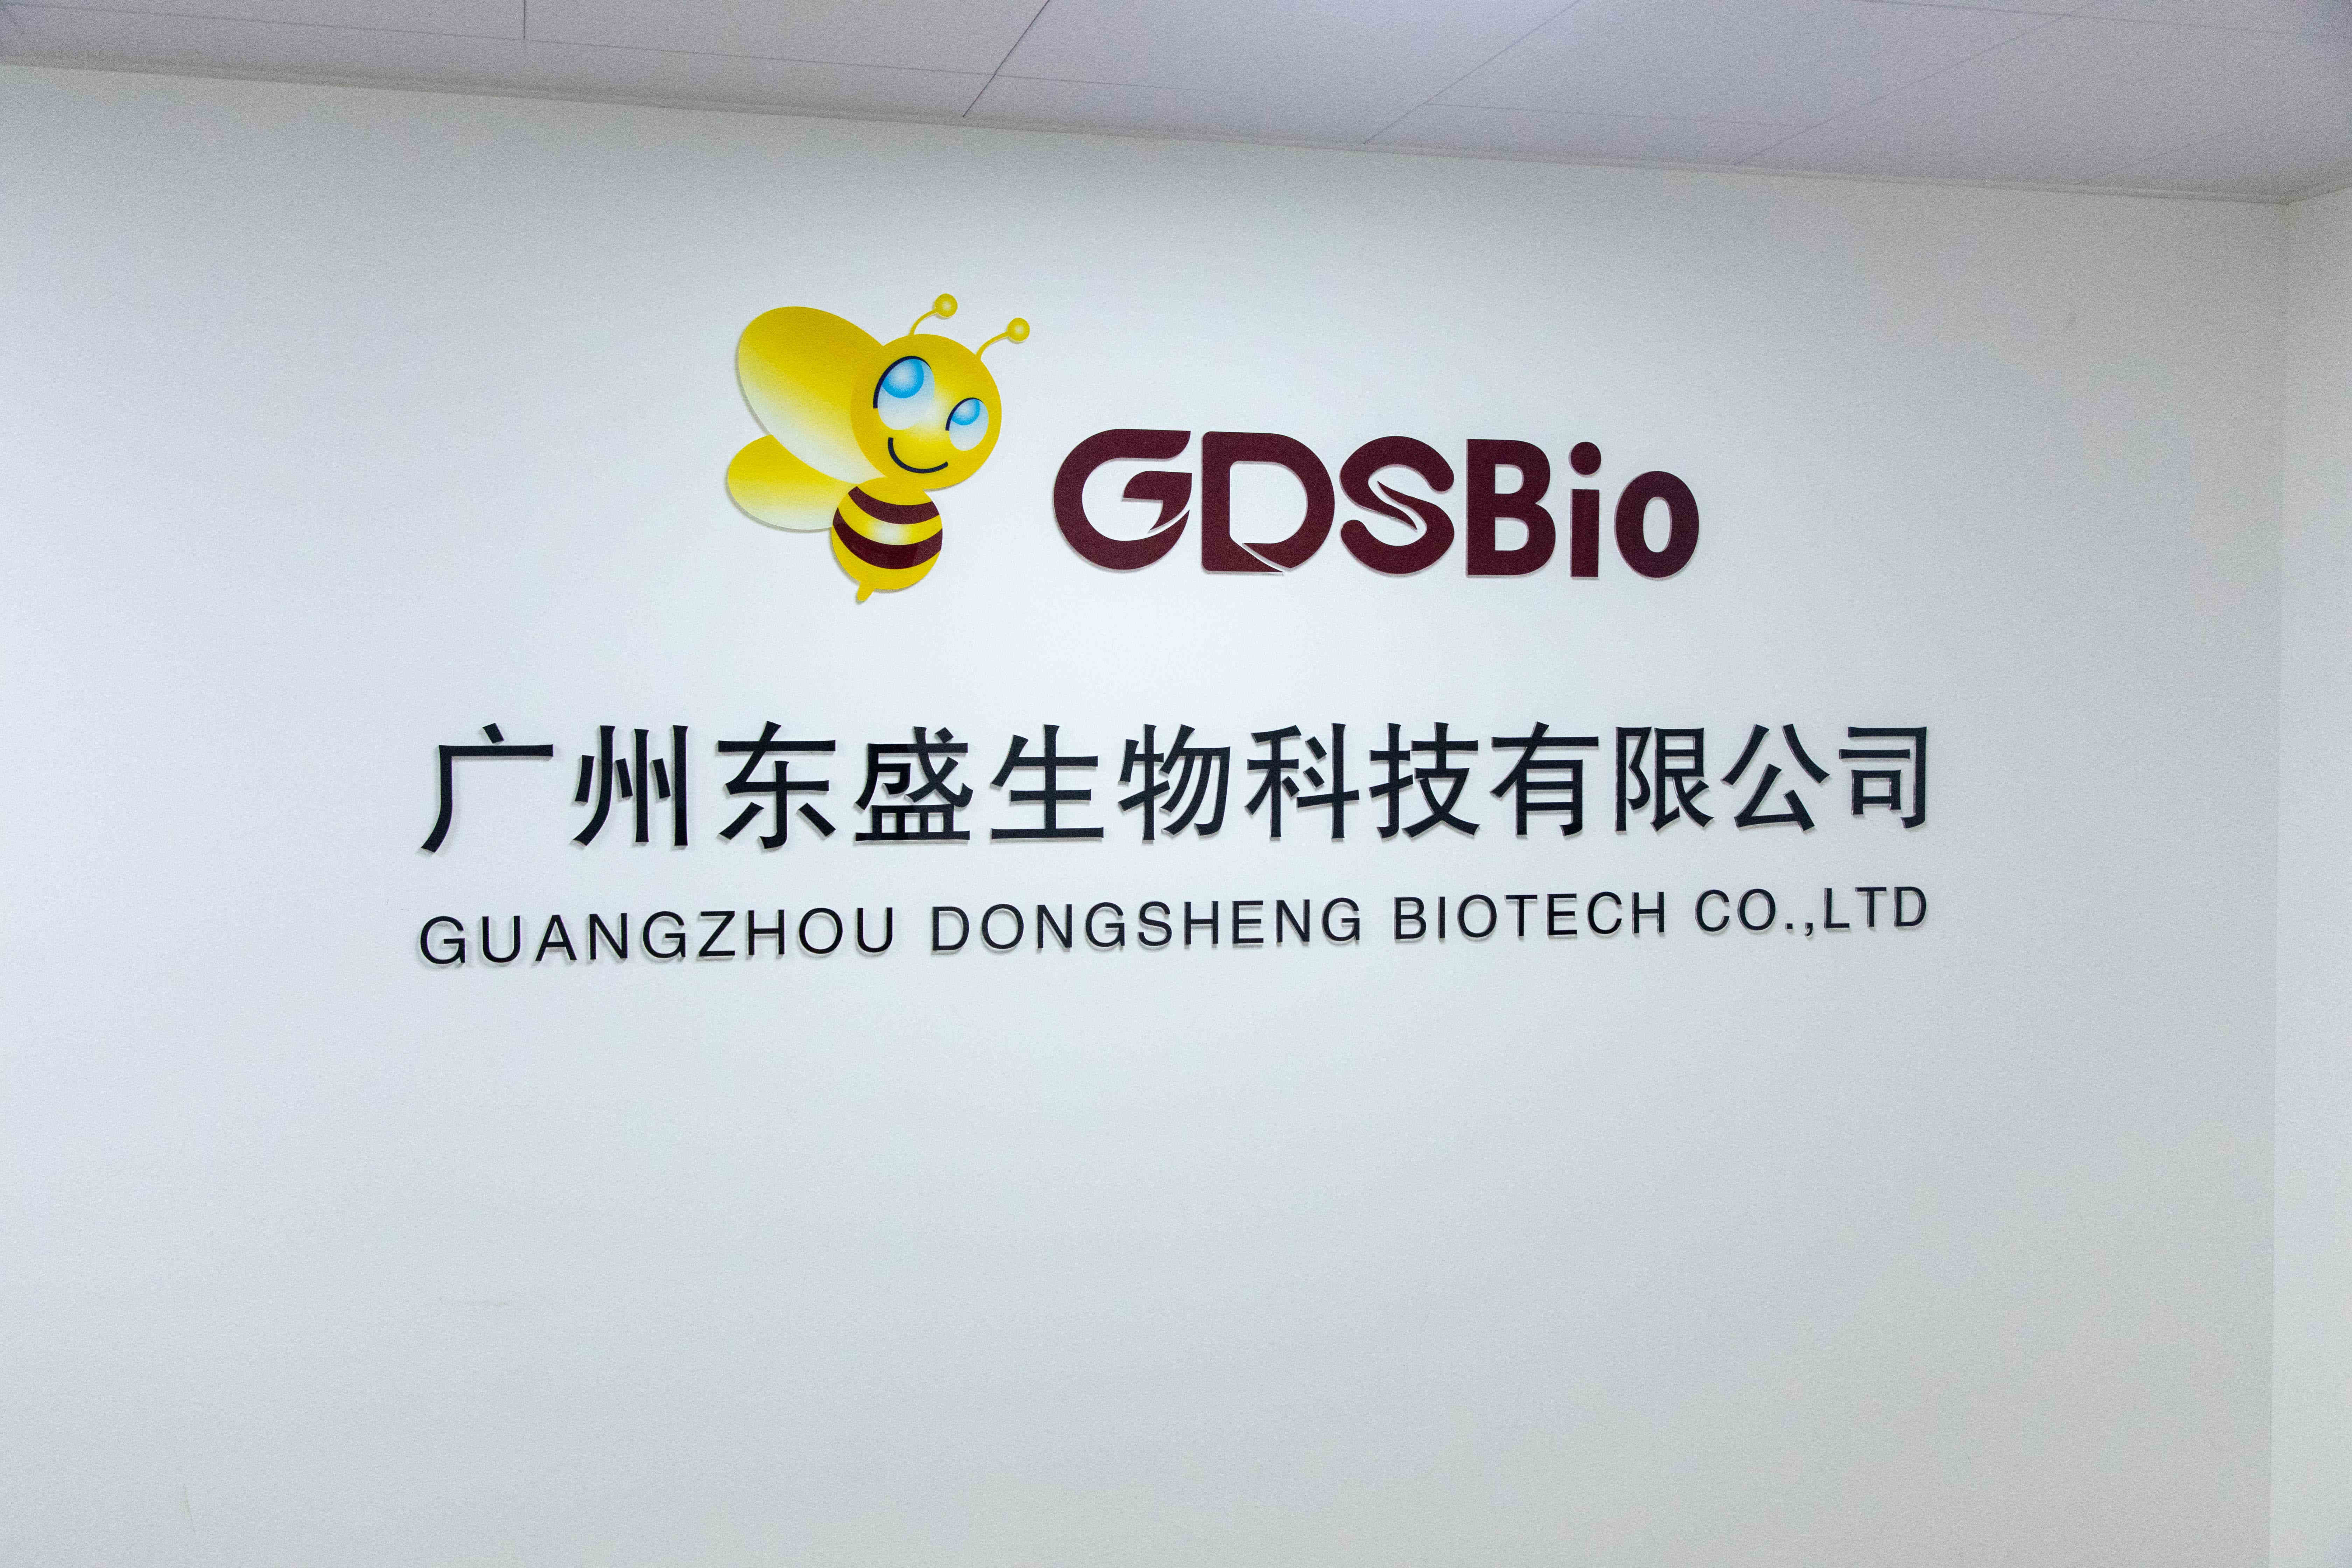 চীন Guangzhou Dongsheng Biotech Co., Ltd সংস্থা প্রোফাইল